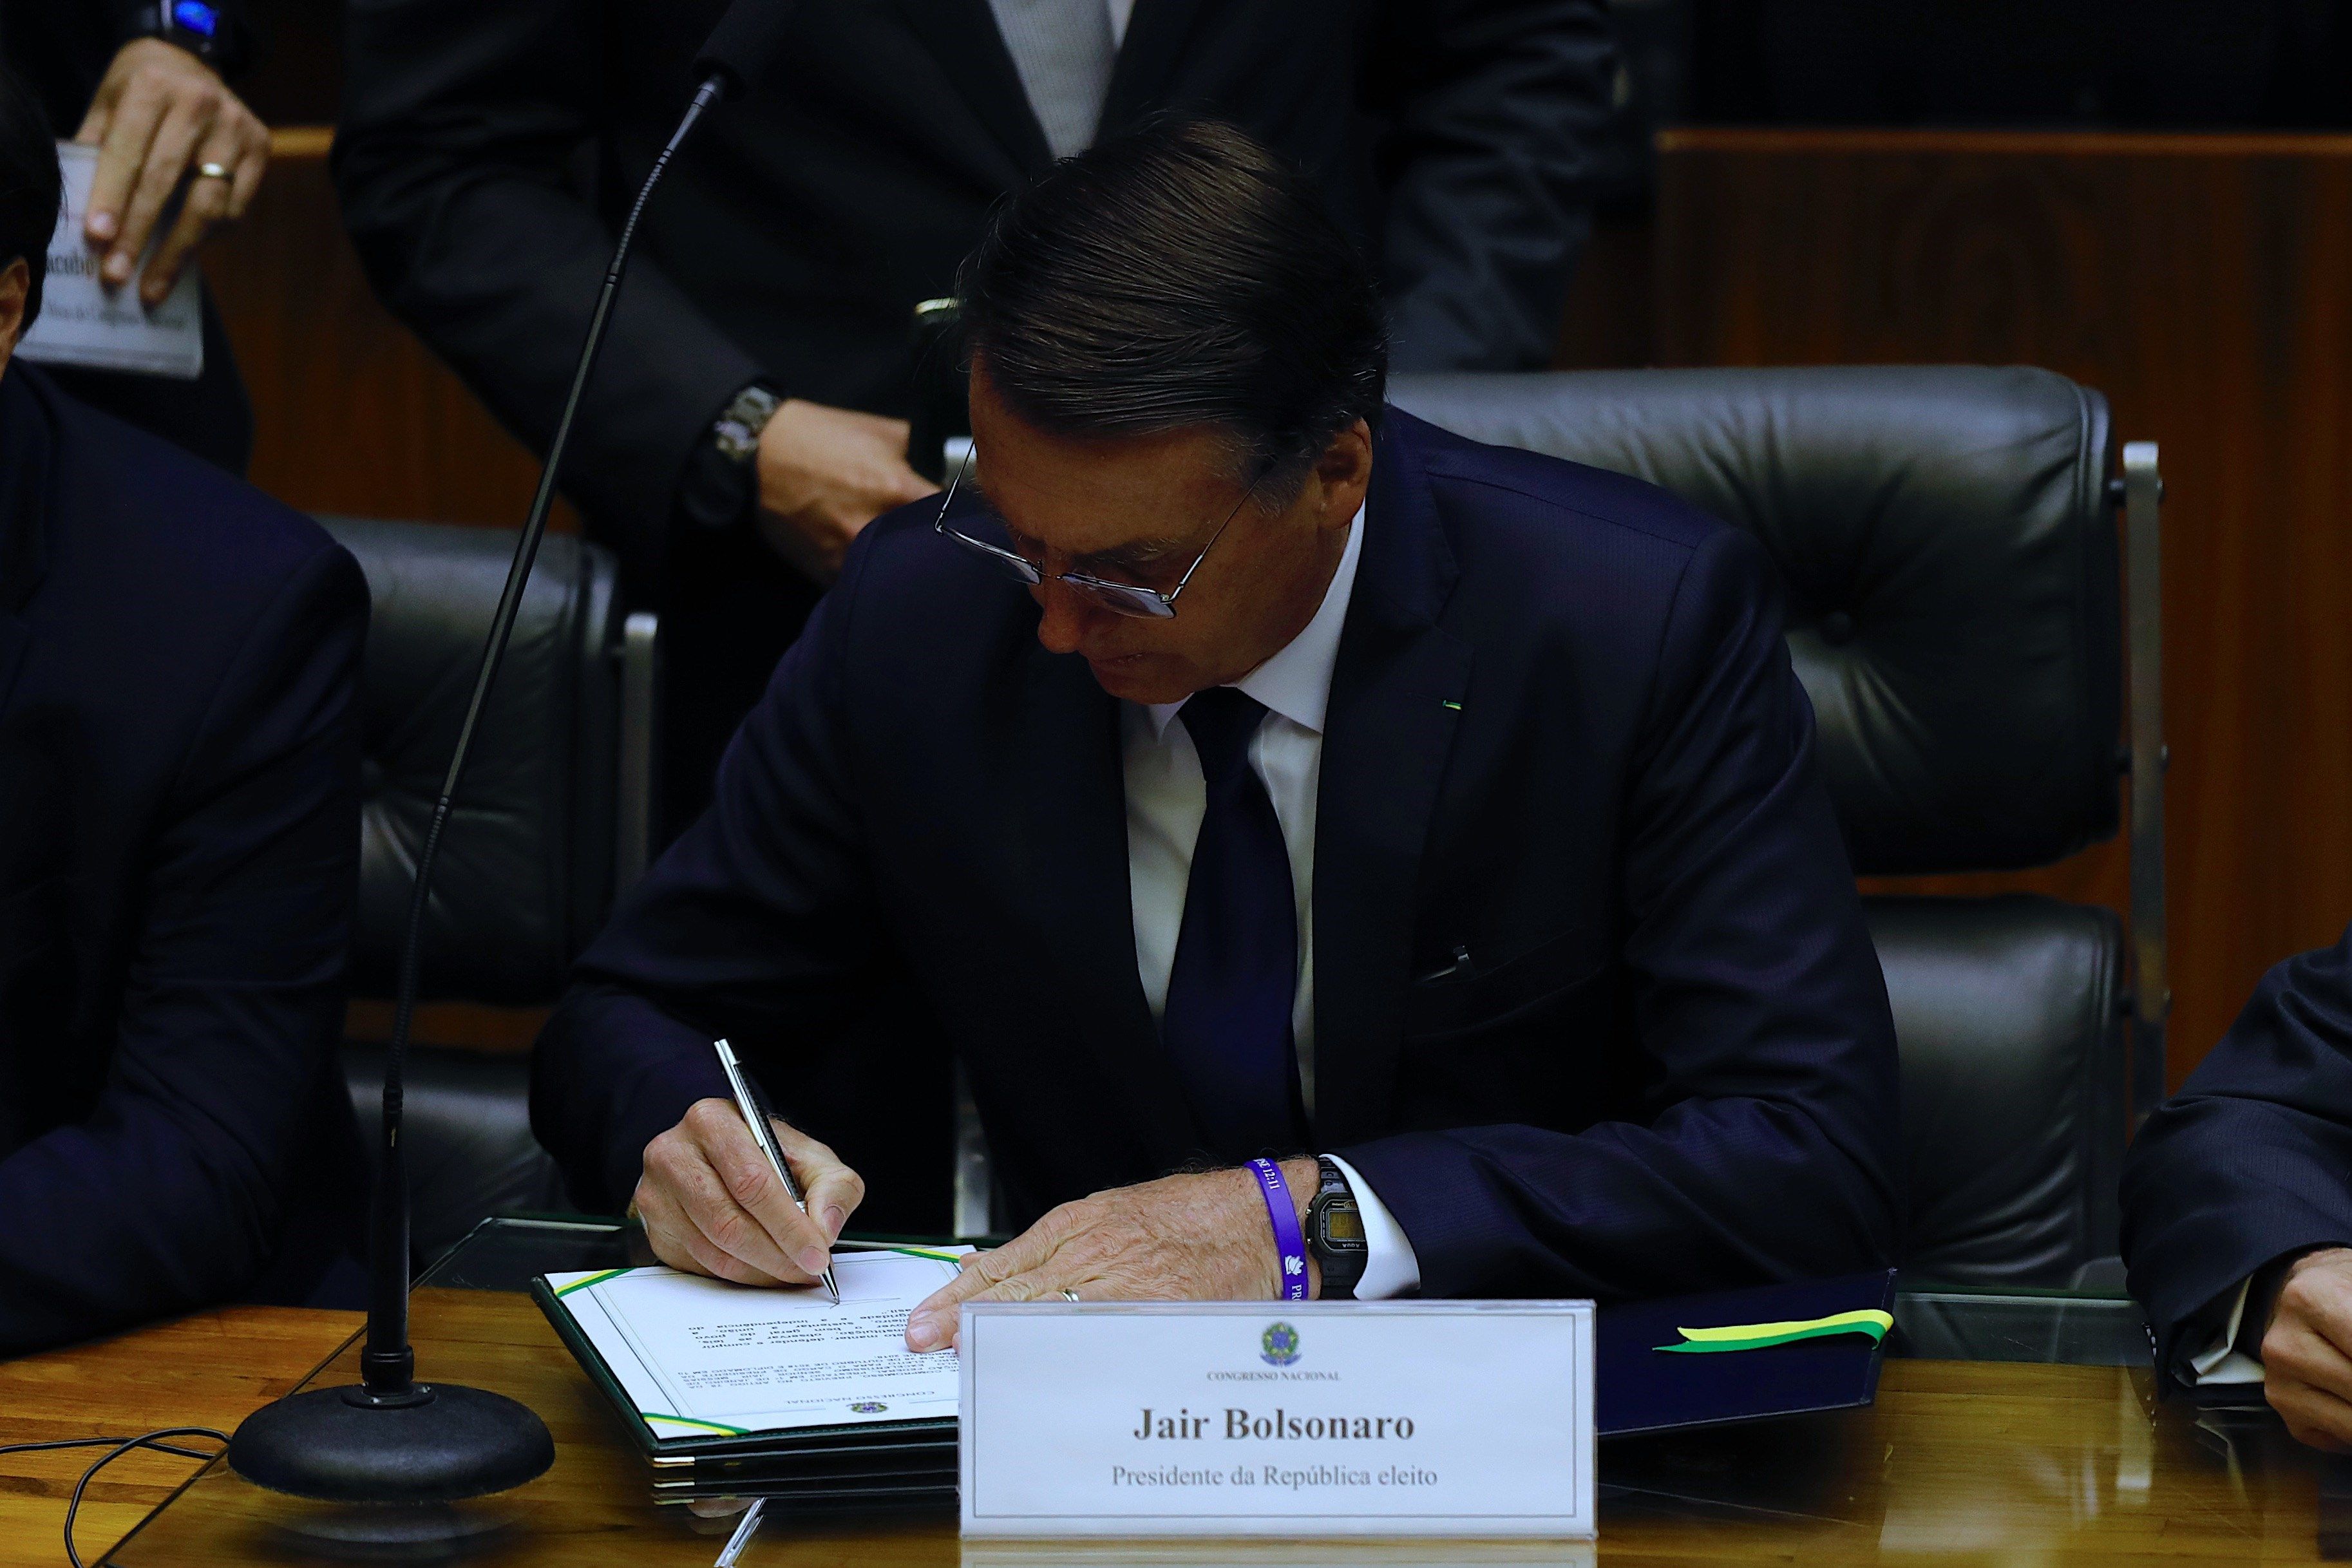  Bolsonaro se pronuncia por “combatir la ideología de género” y rescatar los valores “cristianos”